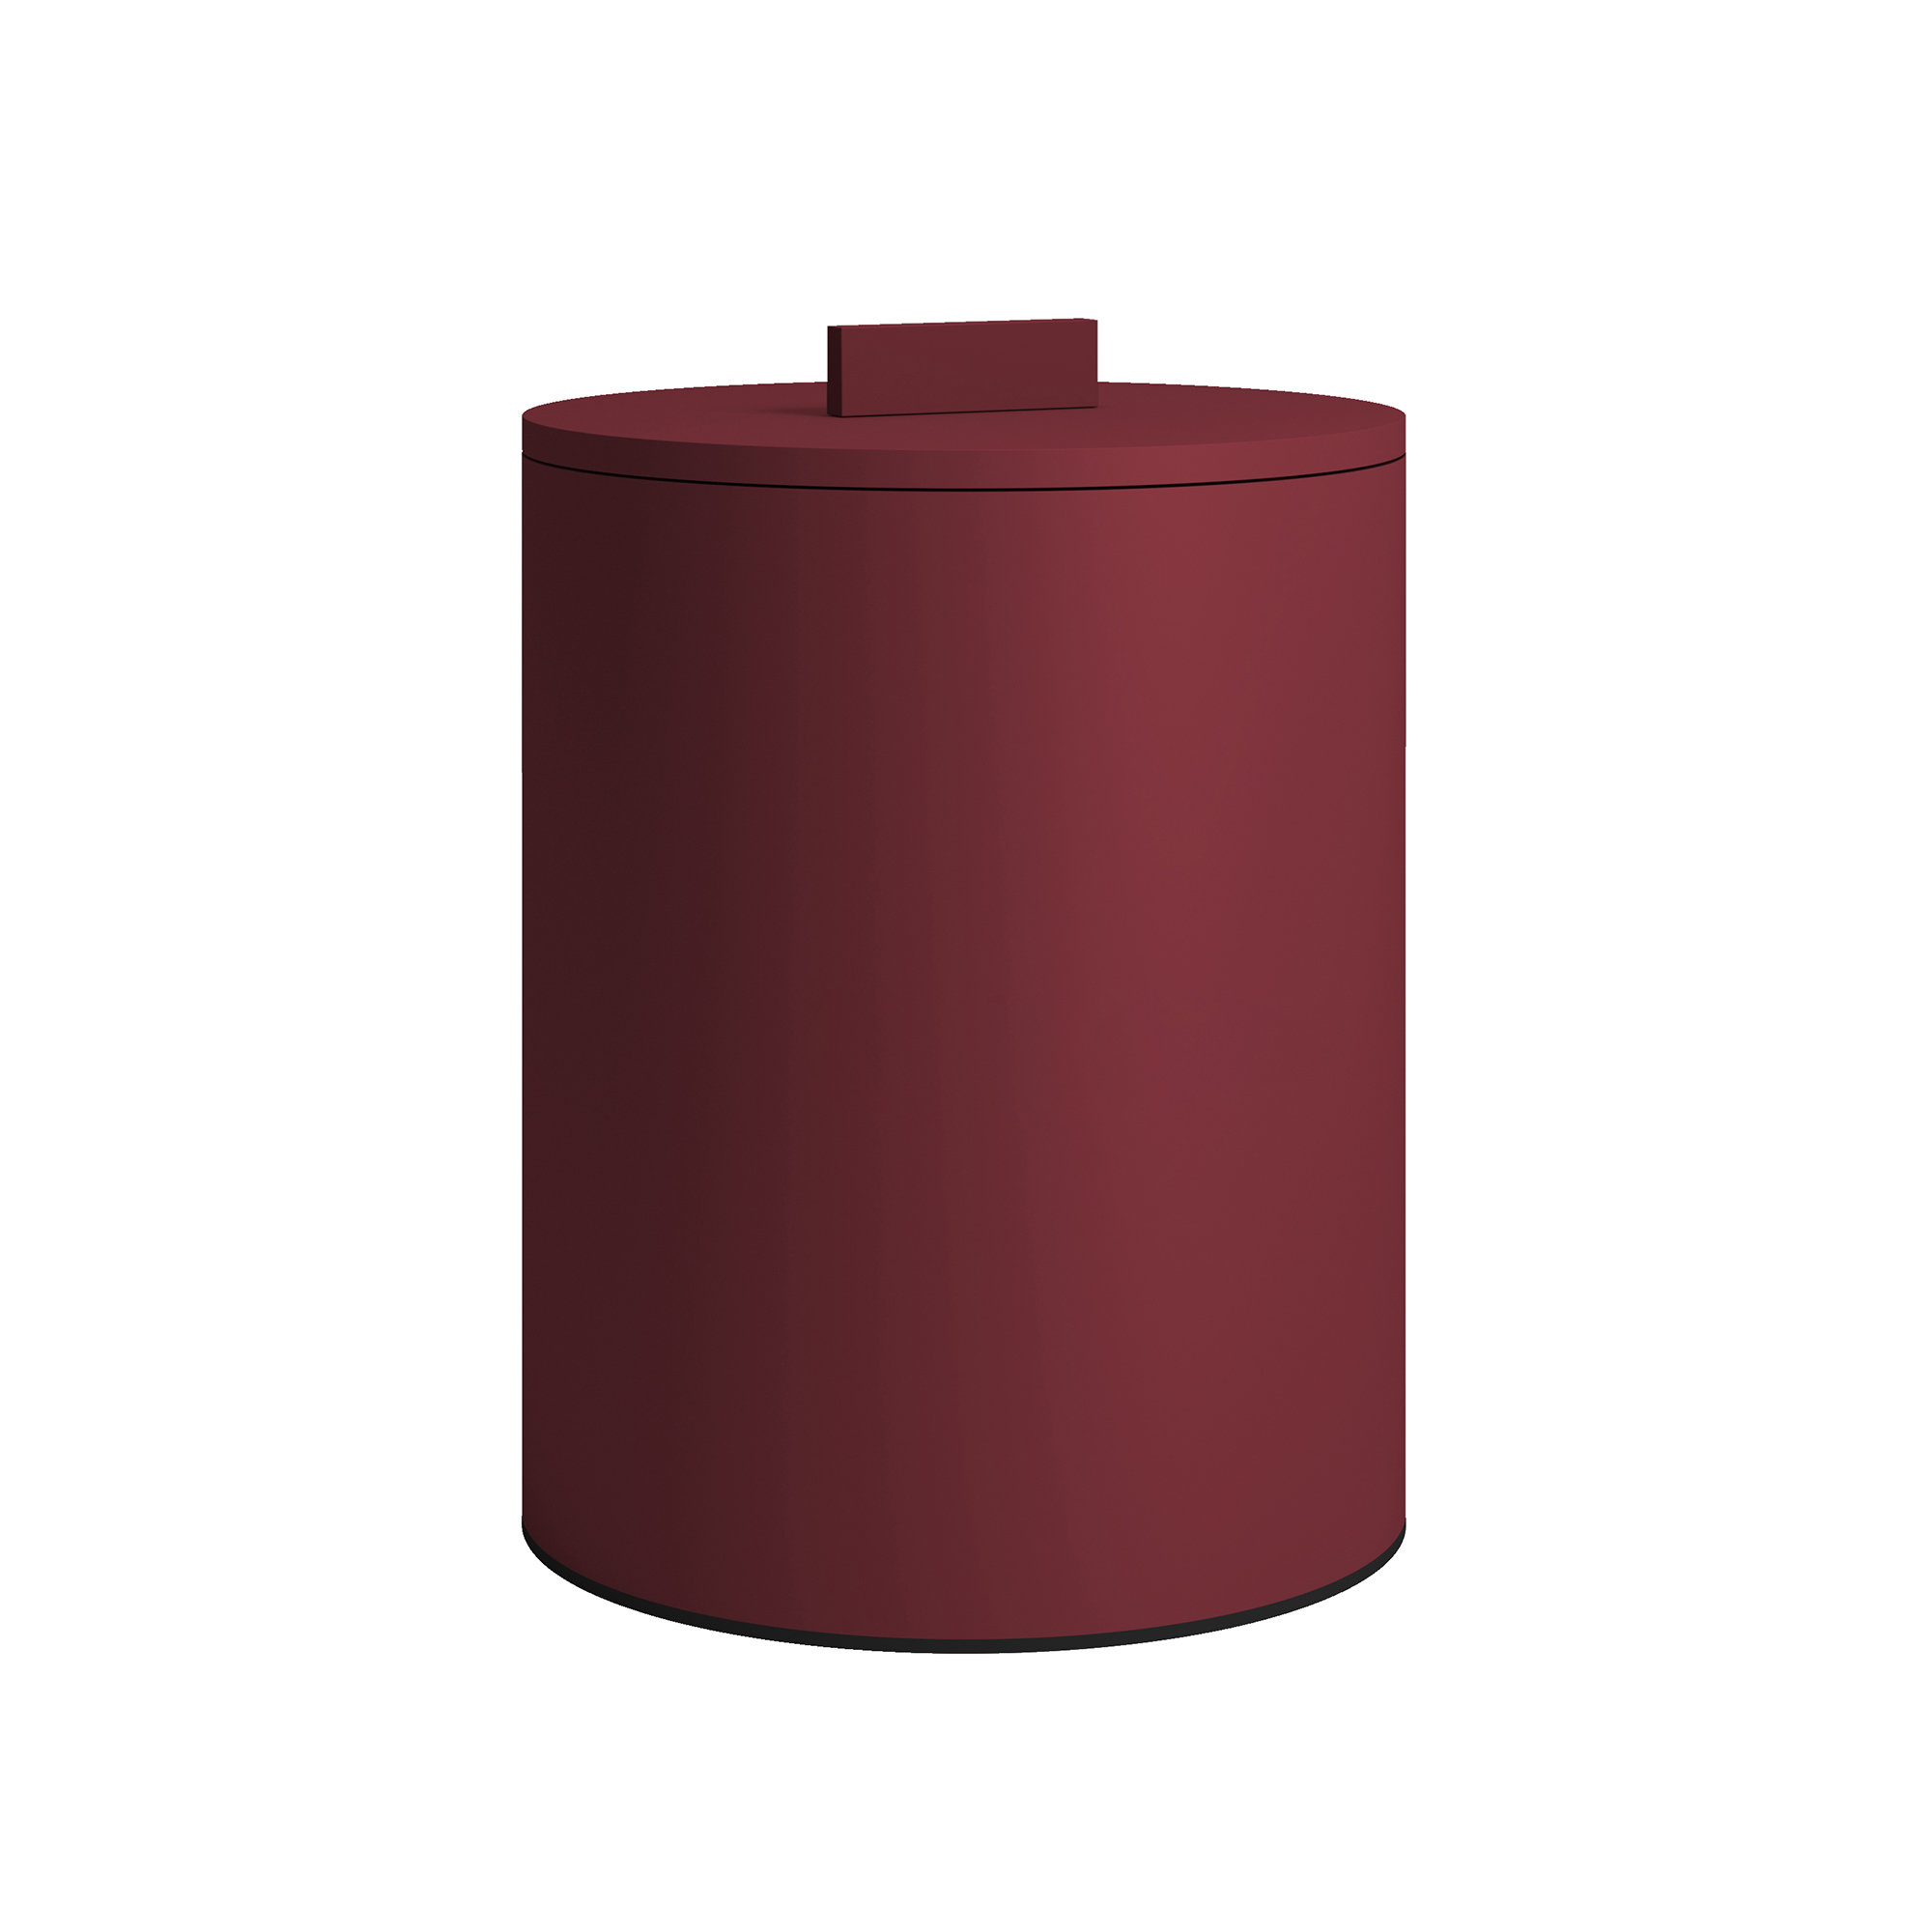 Καλάθι Απορριμμάτων Πάγκου 6lt Ανοξείδωτο Matt Bordeaux Pam & Co Φ20×25εκ. 2326-153 (Υλικό: Ανοξείδωτο, Χρώμα: Μπορντώ ) – Pam & Co – 2326-153